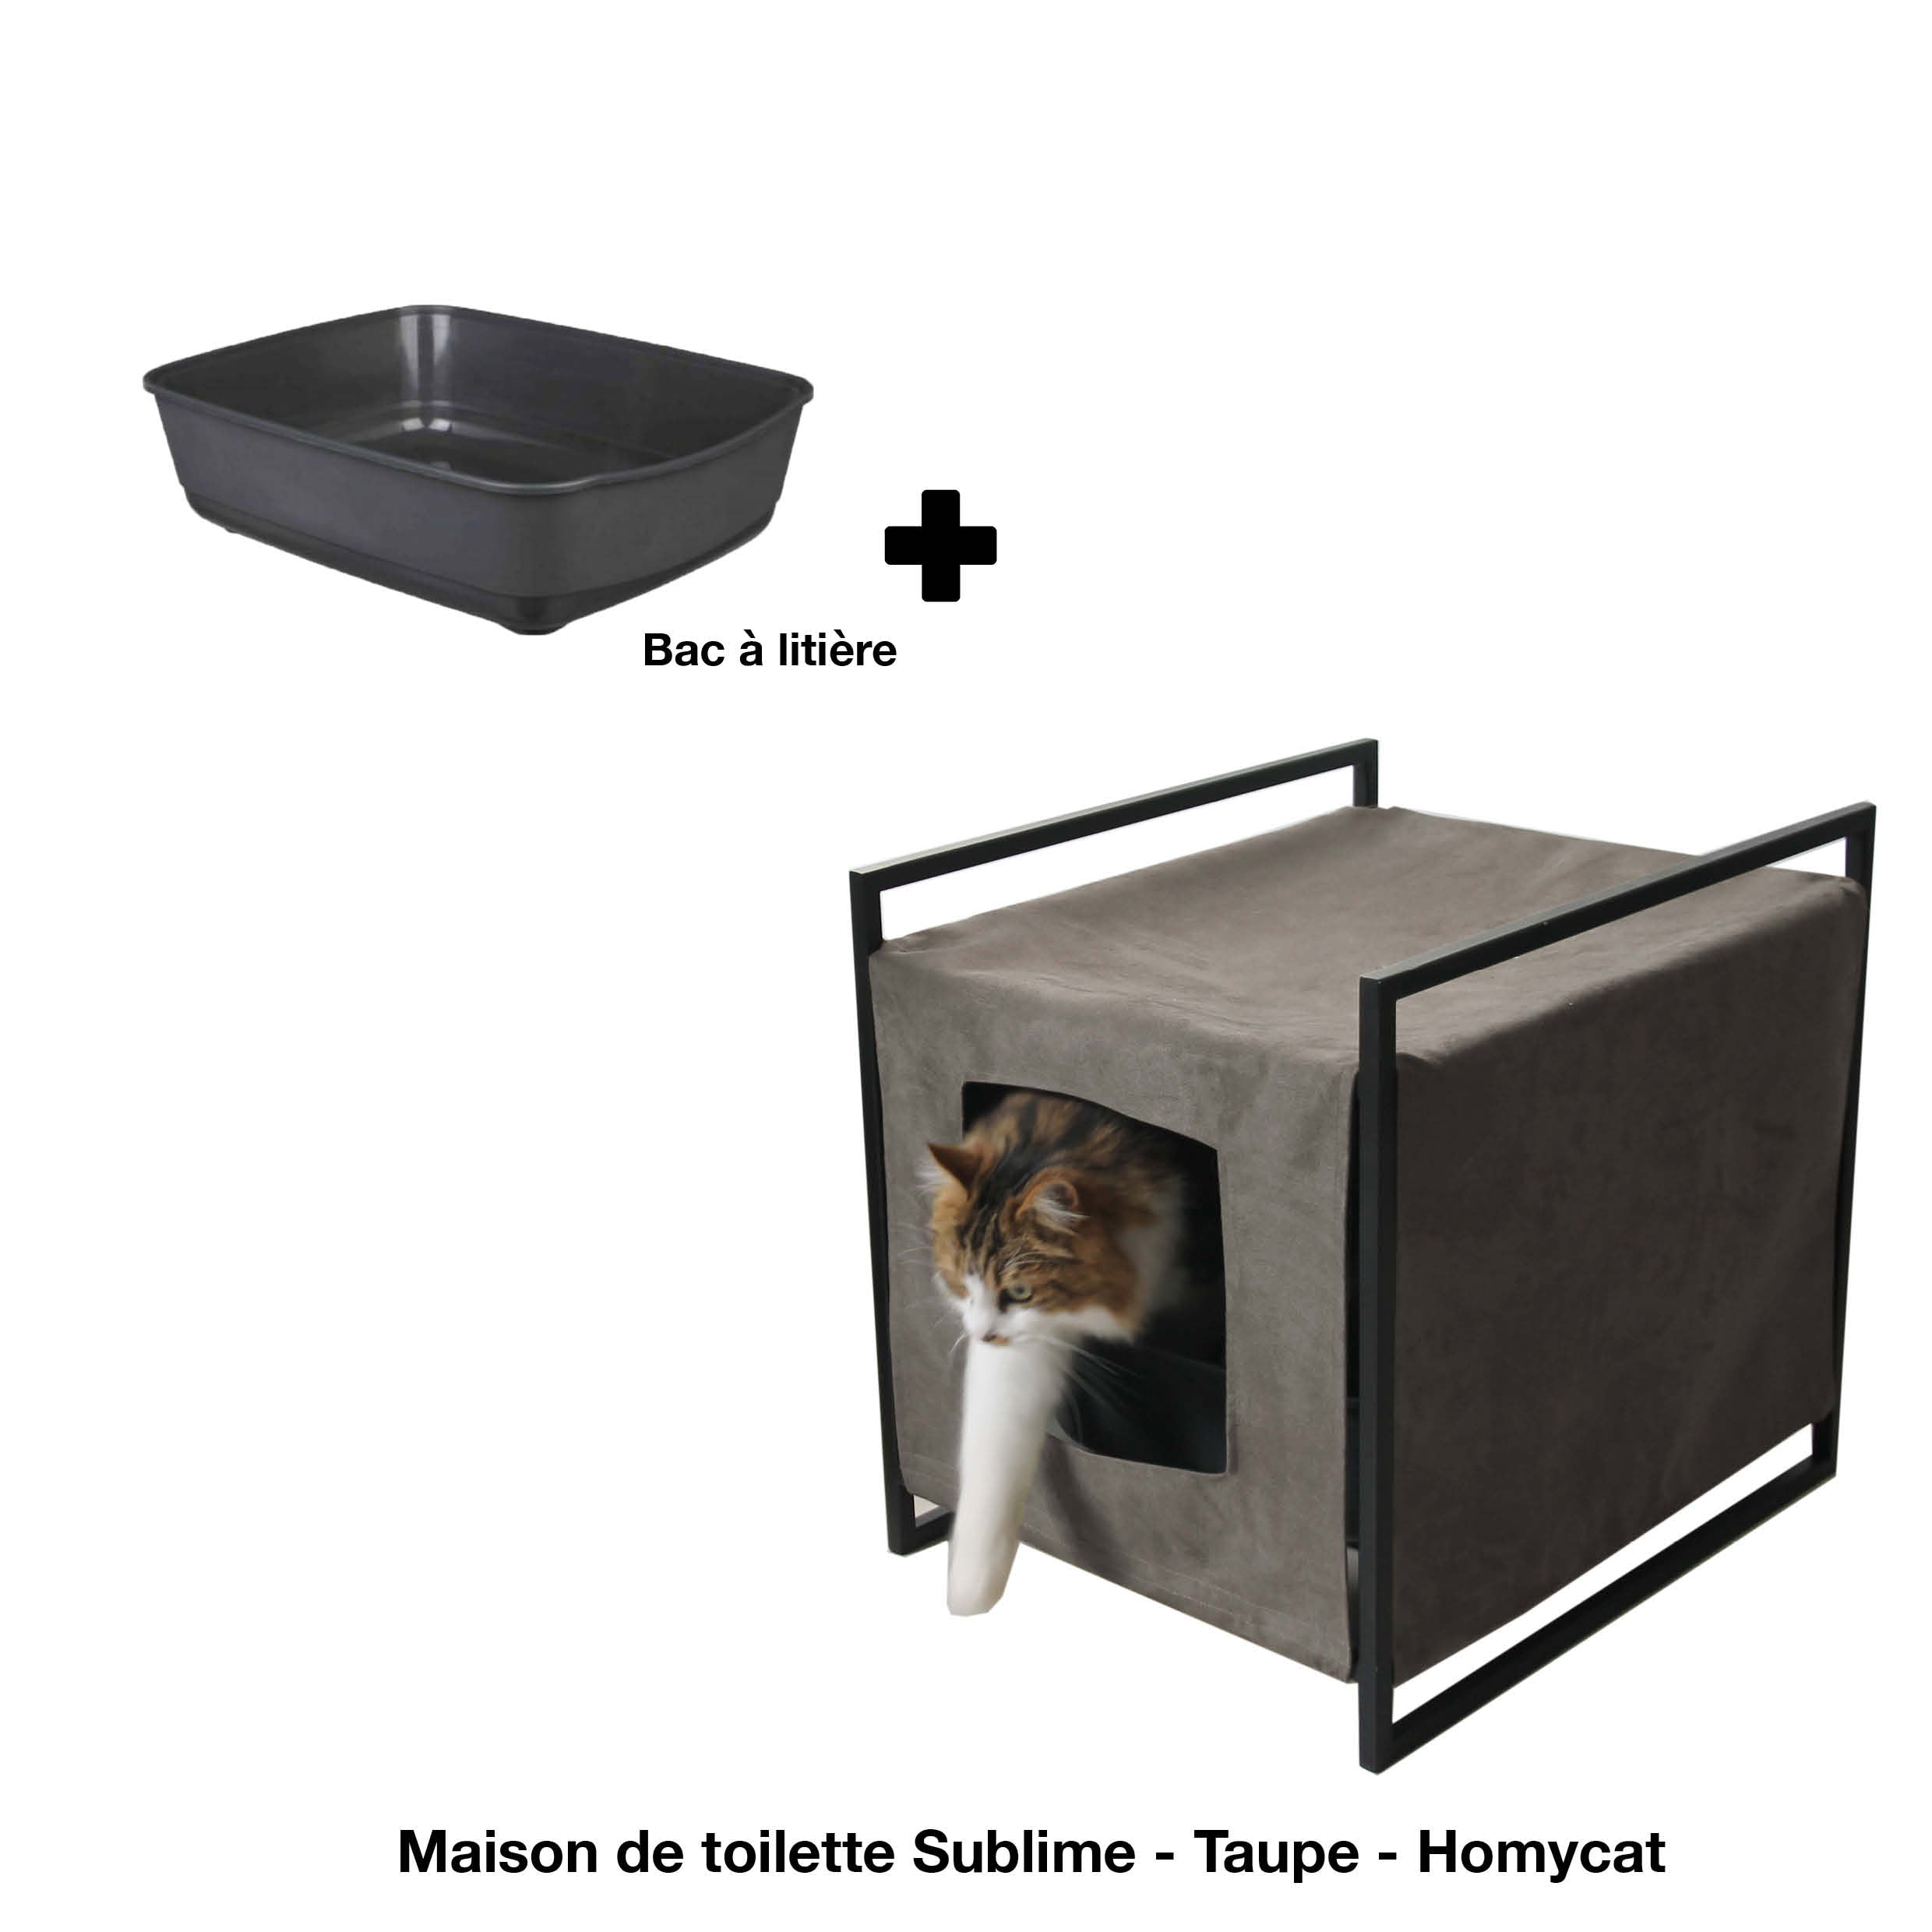 Maison de toilette ou bac à litière pour chat - La Ferme de Manon